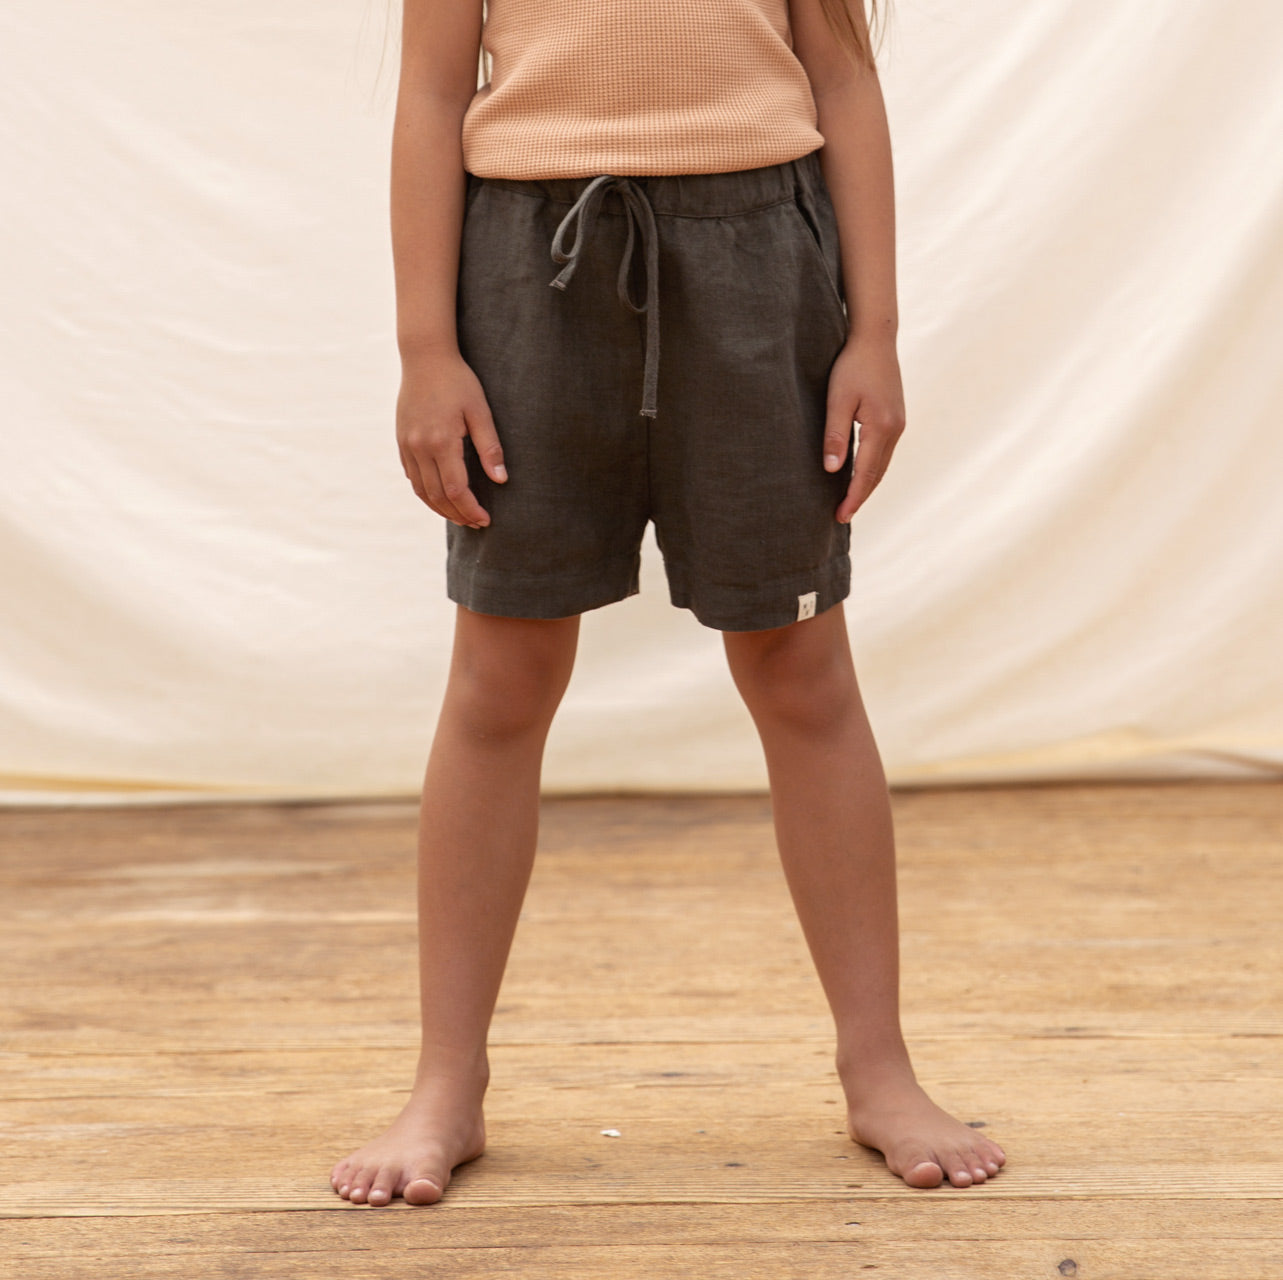 Arkie Linen Shorts (2-10y)